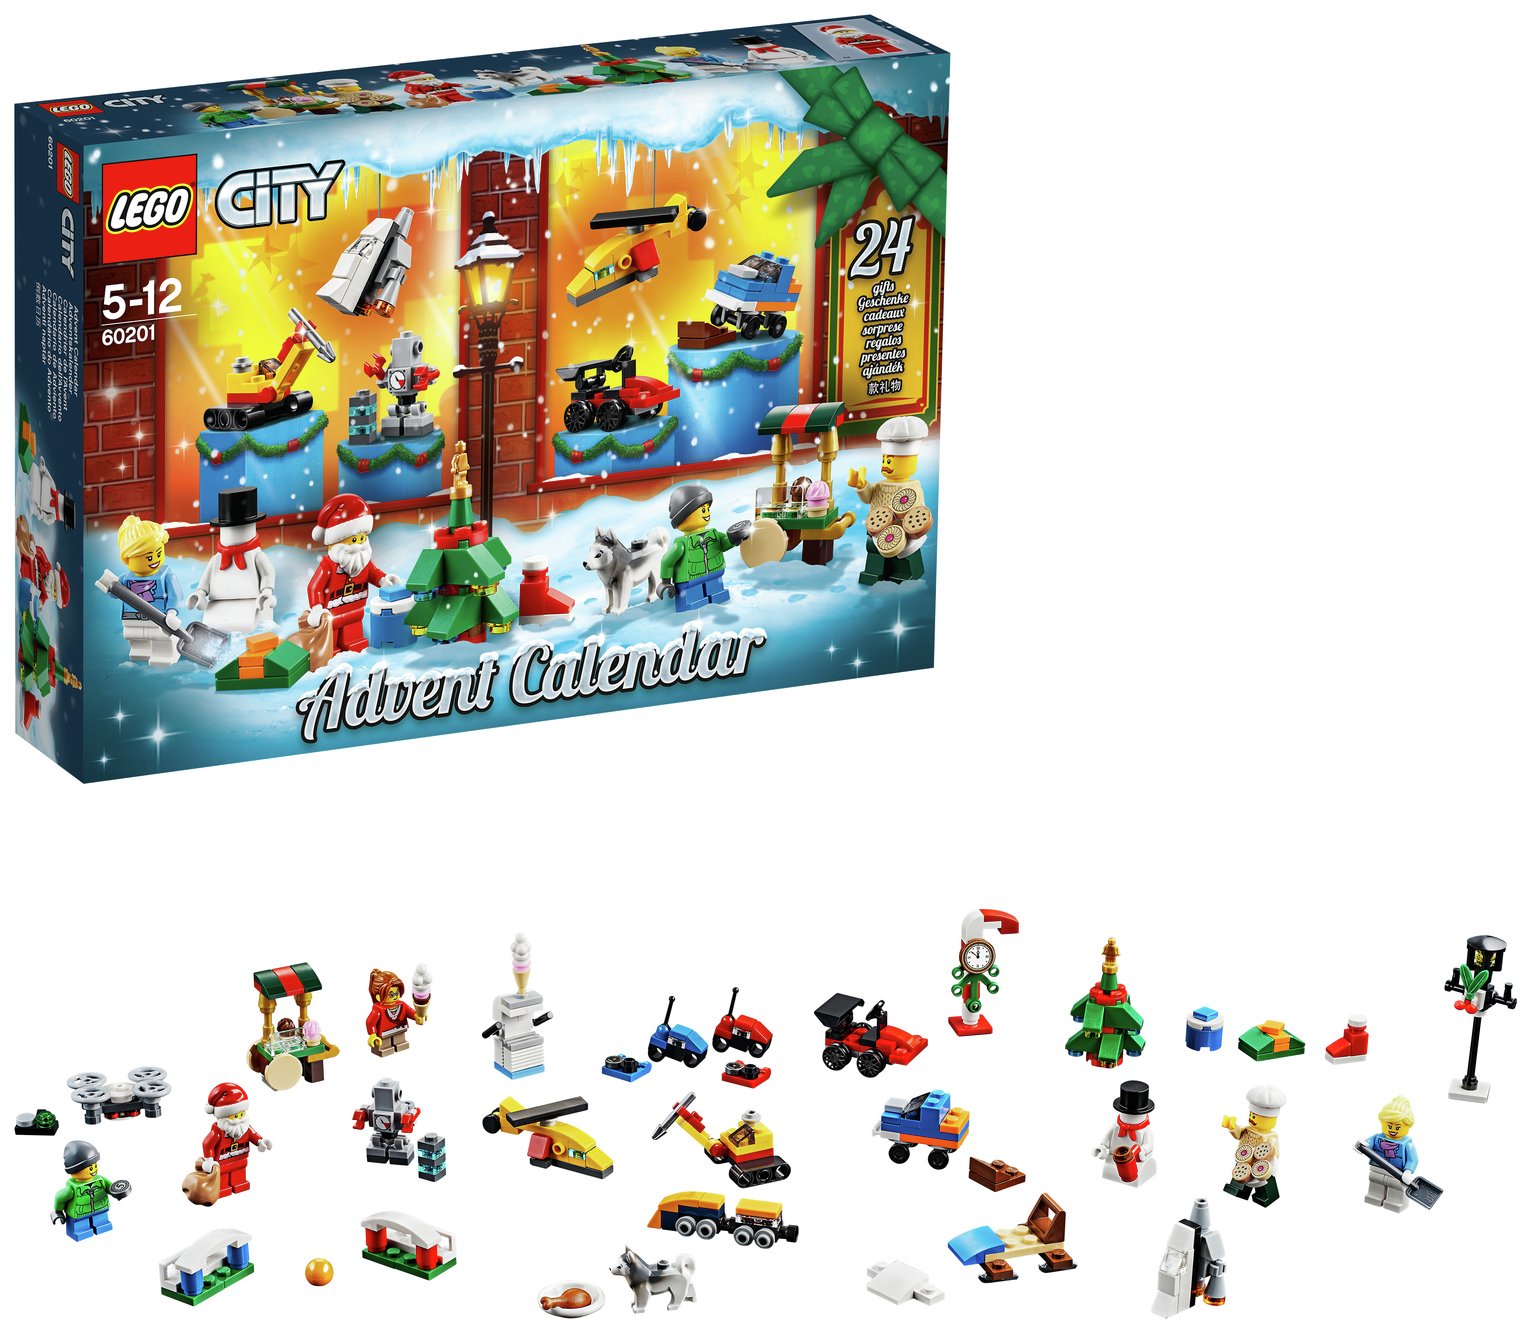 LEGO City Advent Calendar Reviews